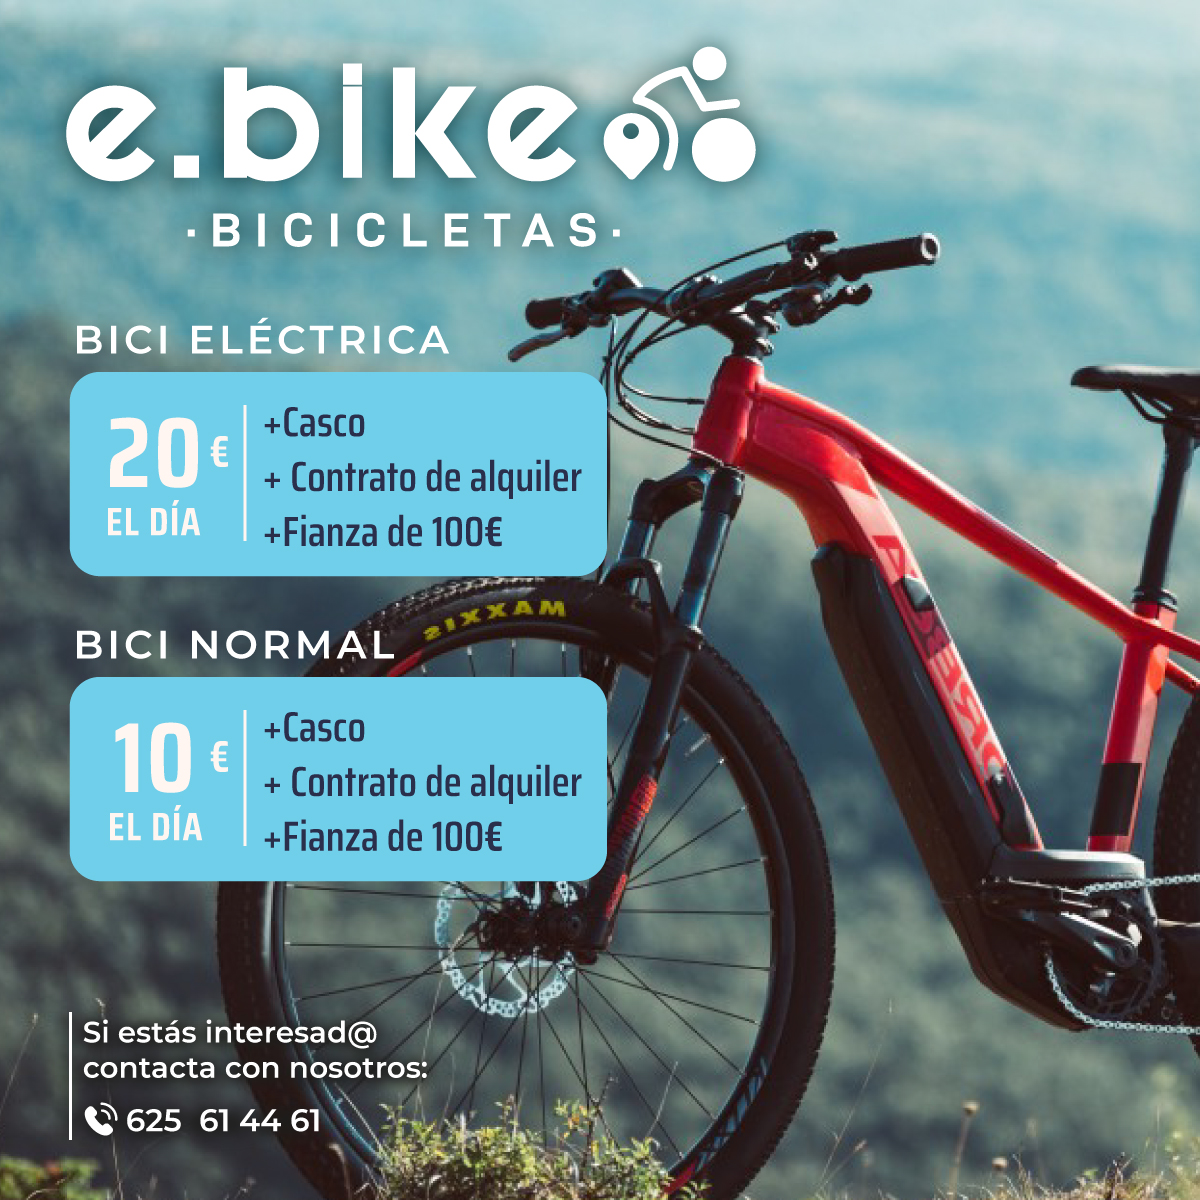 Experiencia E.Bike